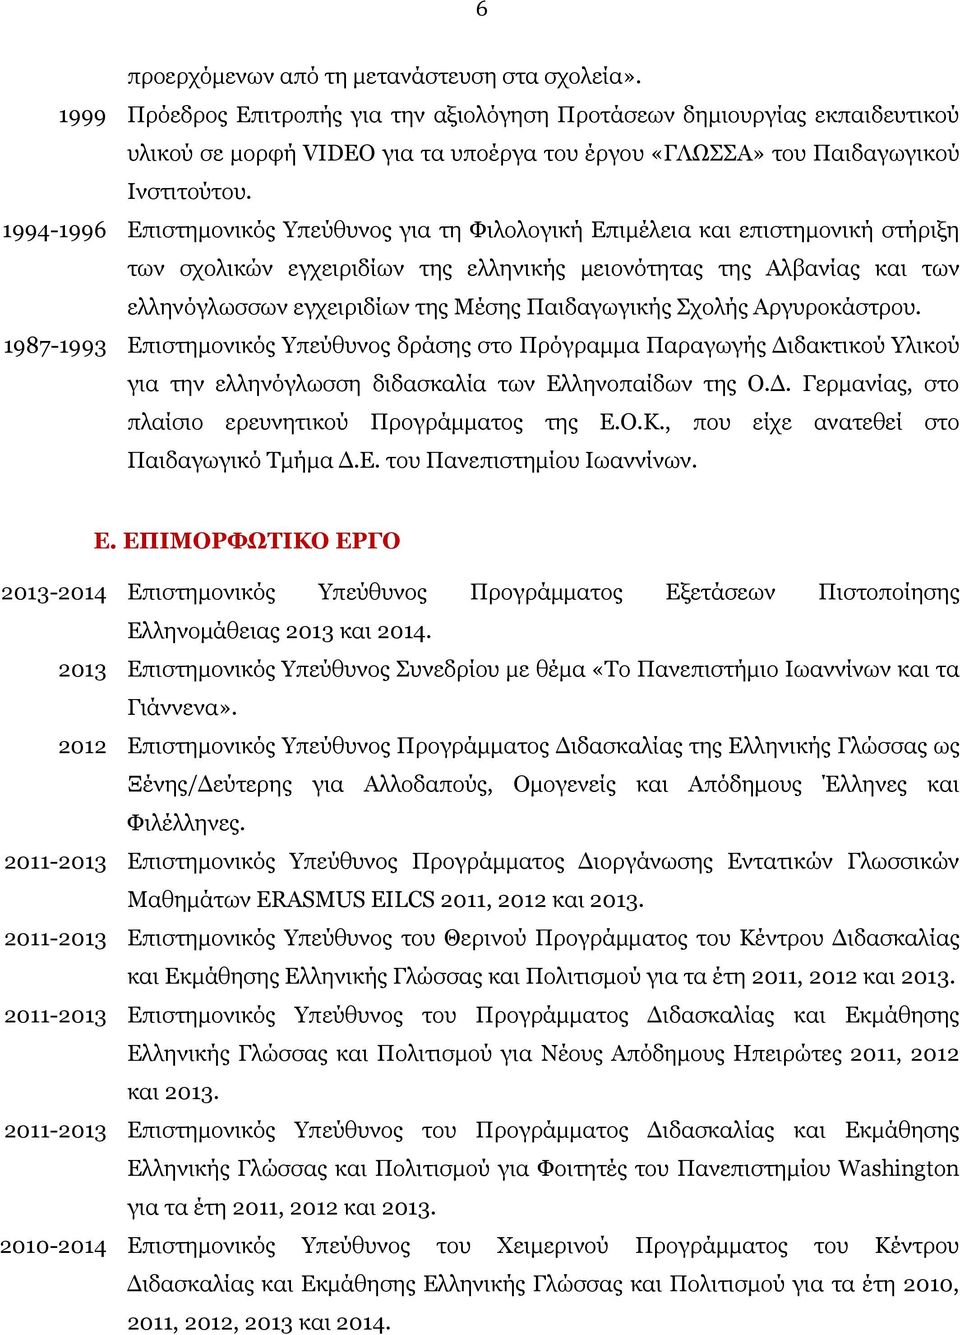 1994-1996 Επιστημονικός Υπεύθυνος για τη Φιλολογική Επιμέλεια και επιστημονική στήριξη των σχολικών εγχειριδίων της ελληνικής μειονότητας της Αλβανίας και των ελληνόγλωσσων εγχειριδίων της Μέσης